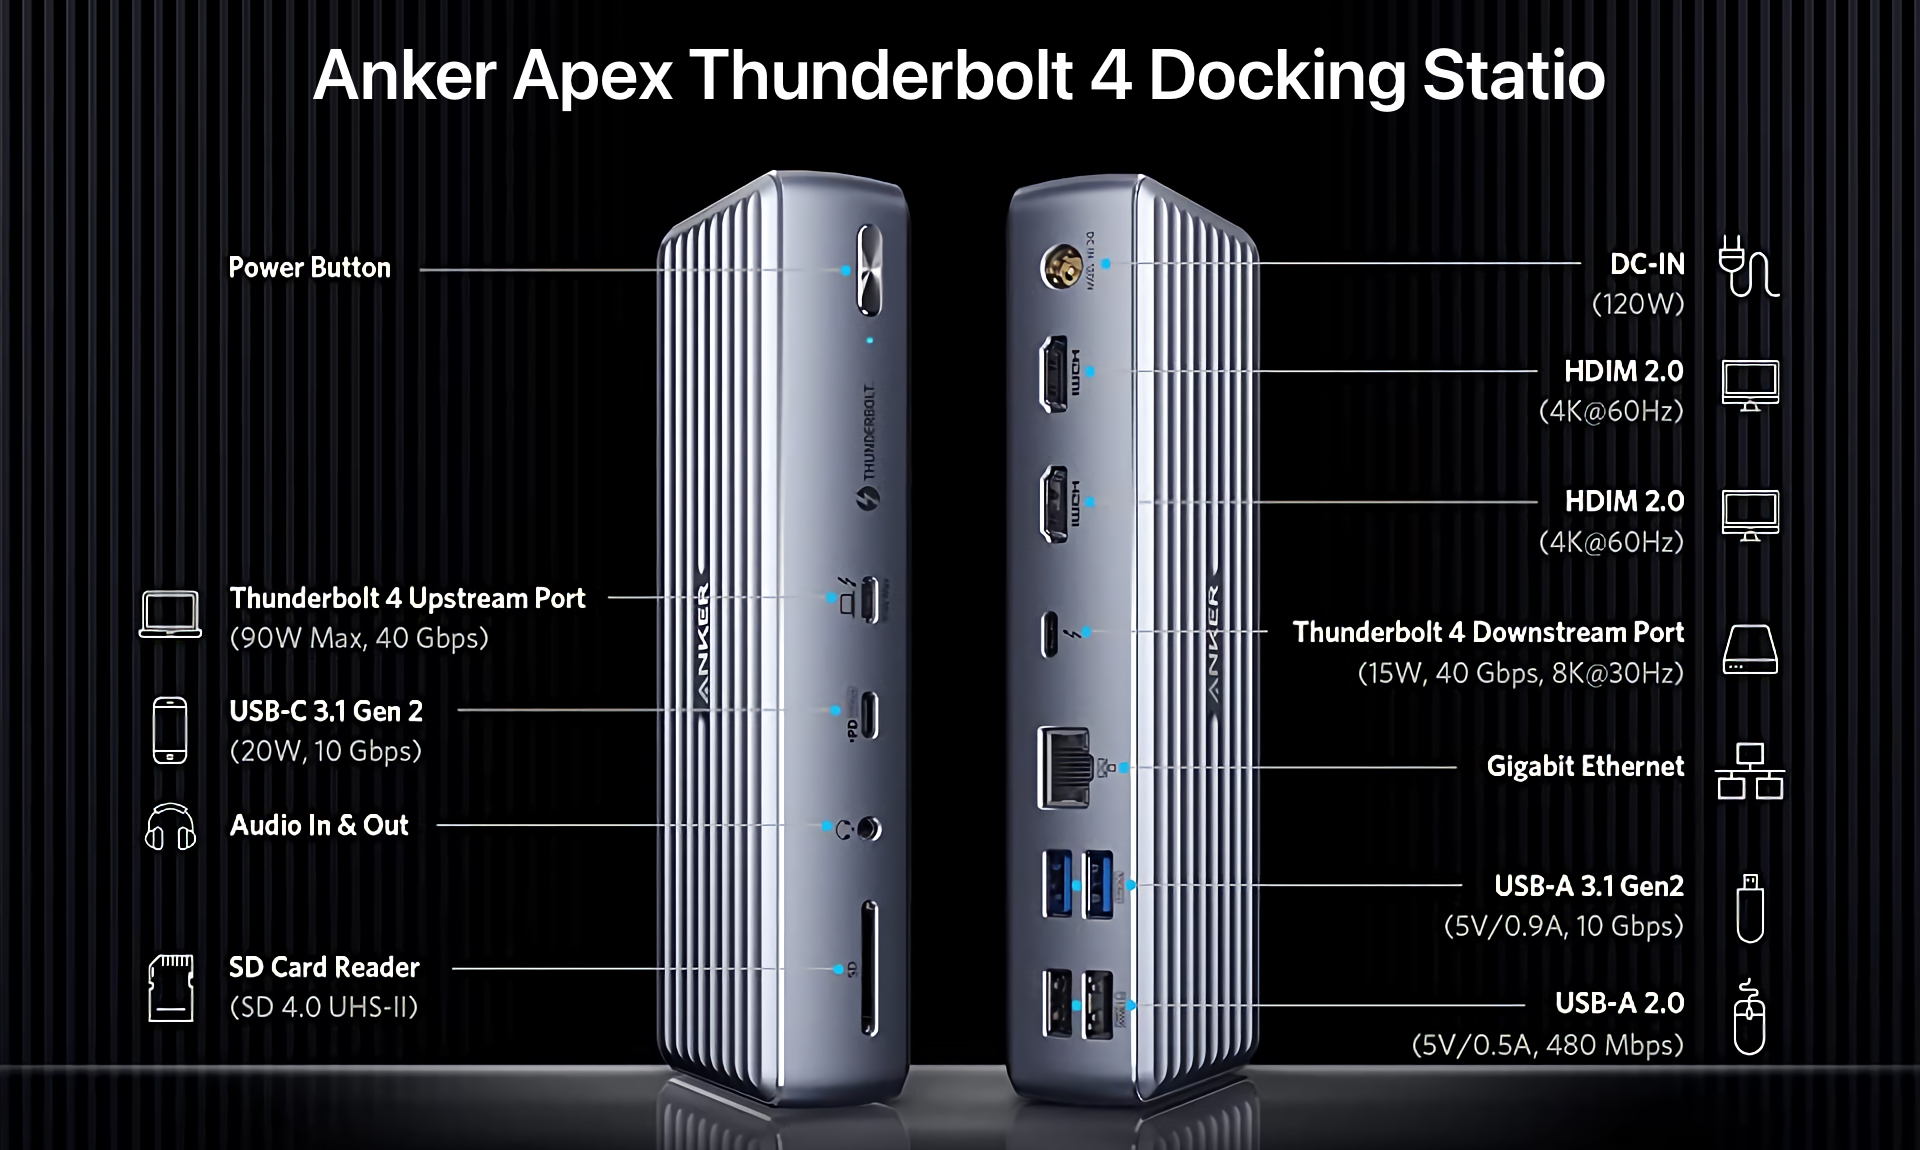 Anker Apex Thunderbolt 4 Docking Station